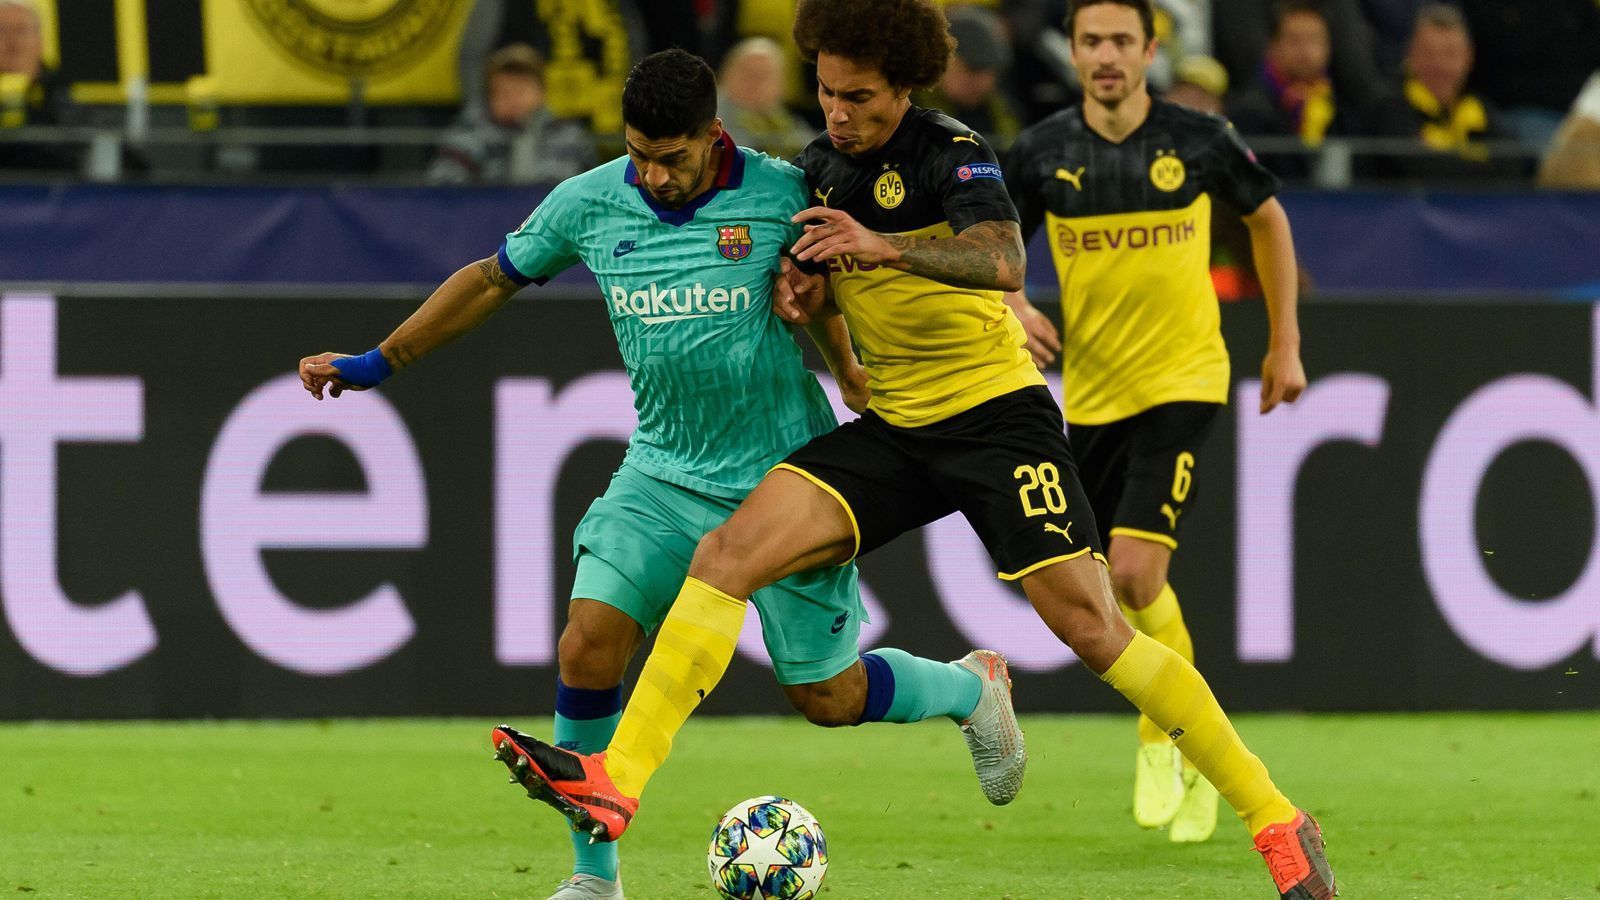 
                <strong>BVB startet mit Remis gegen Barca in die Champions League</strong><br>
                Da war mehr drin: Borussia Dortmund ist mit einem 0:0 gegen den FC Barcelona in die Gruppenphase der Champions League gestartet. Wir haben beide Teams benotet.
              